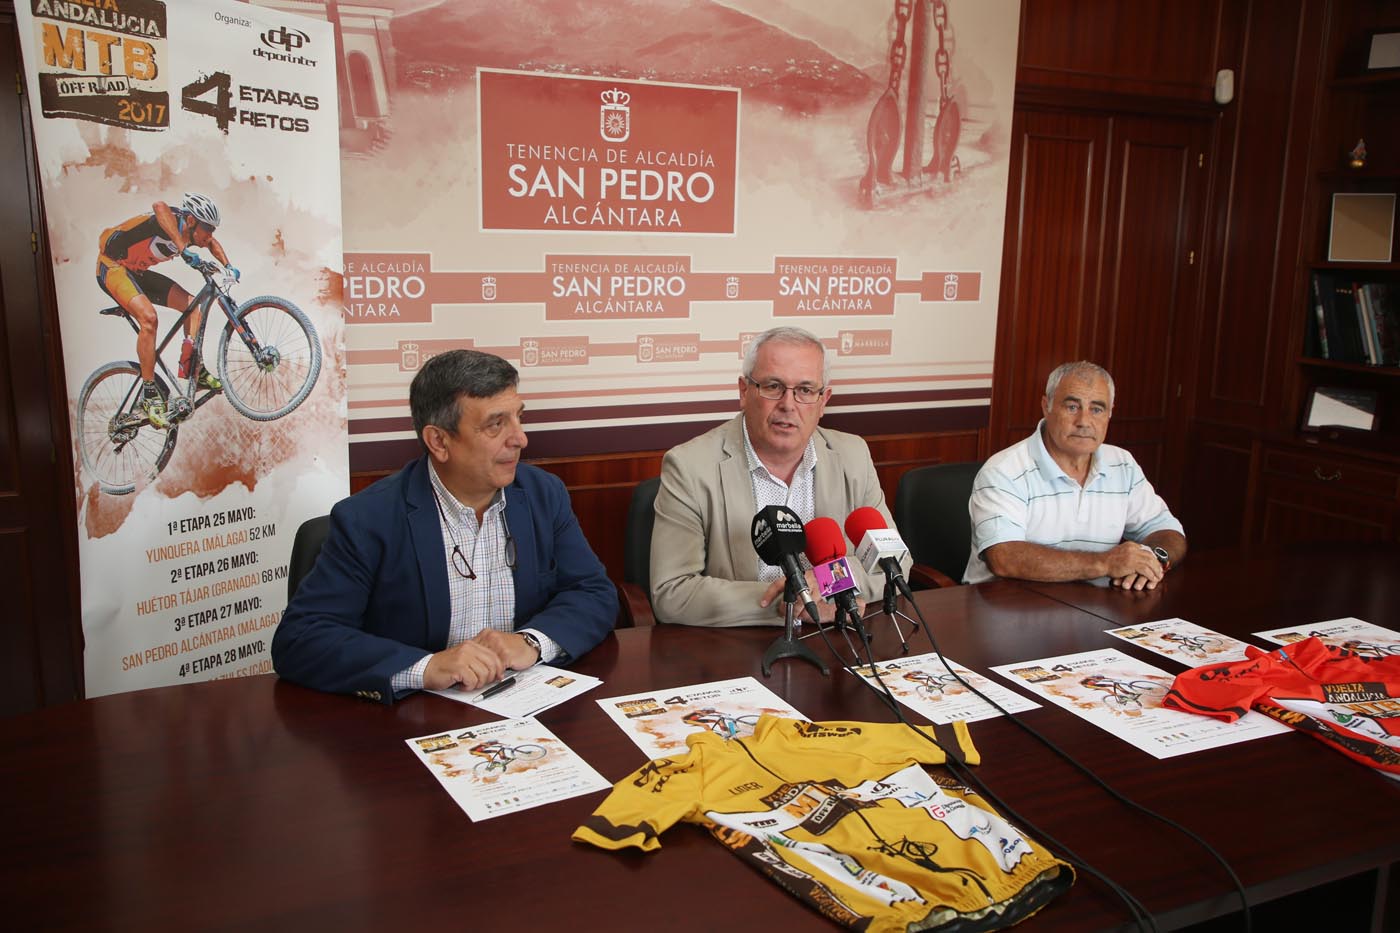 La Vuelta Ciclista a Andalucía MBT recala por segundo año en San Pedro con una etapa en la que participarán este sábado más de 300 deportistas